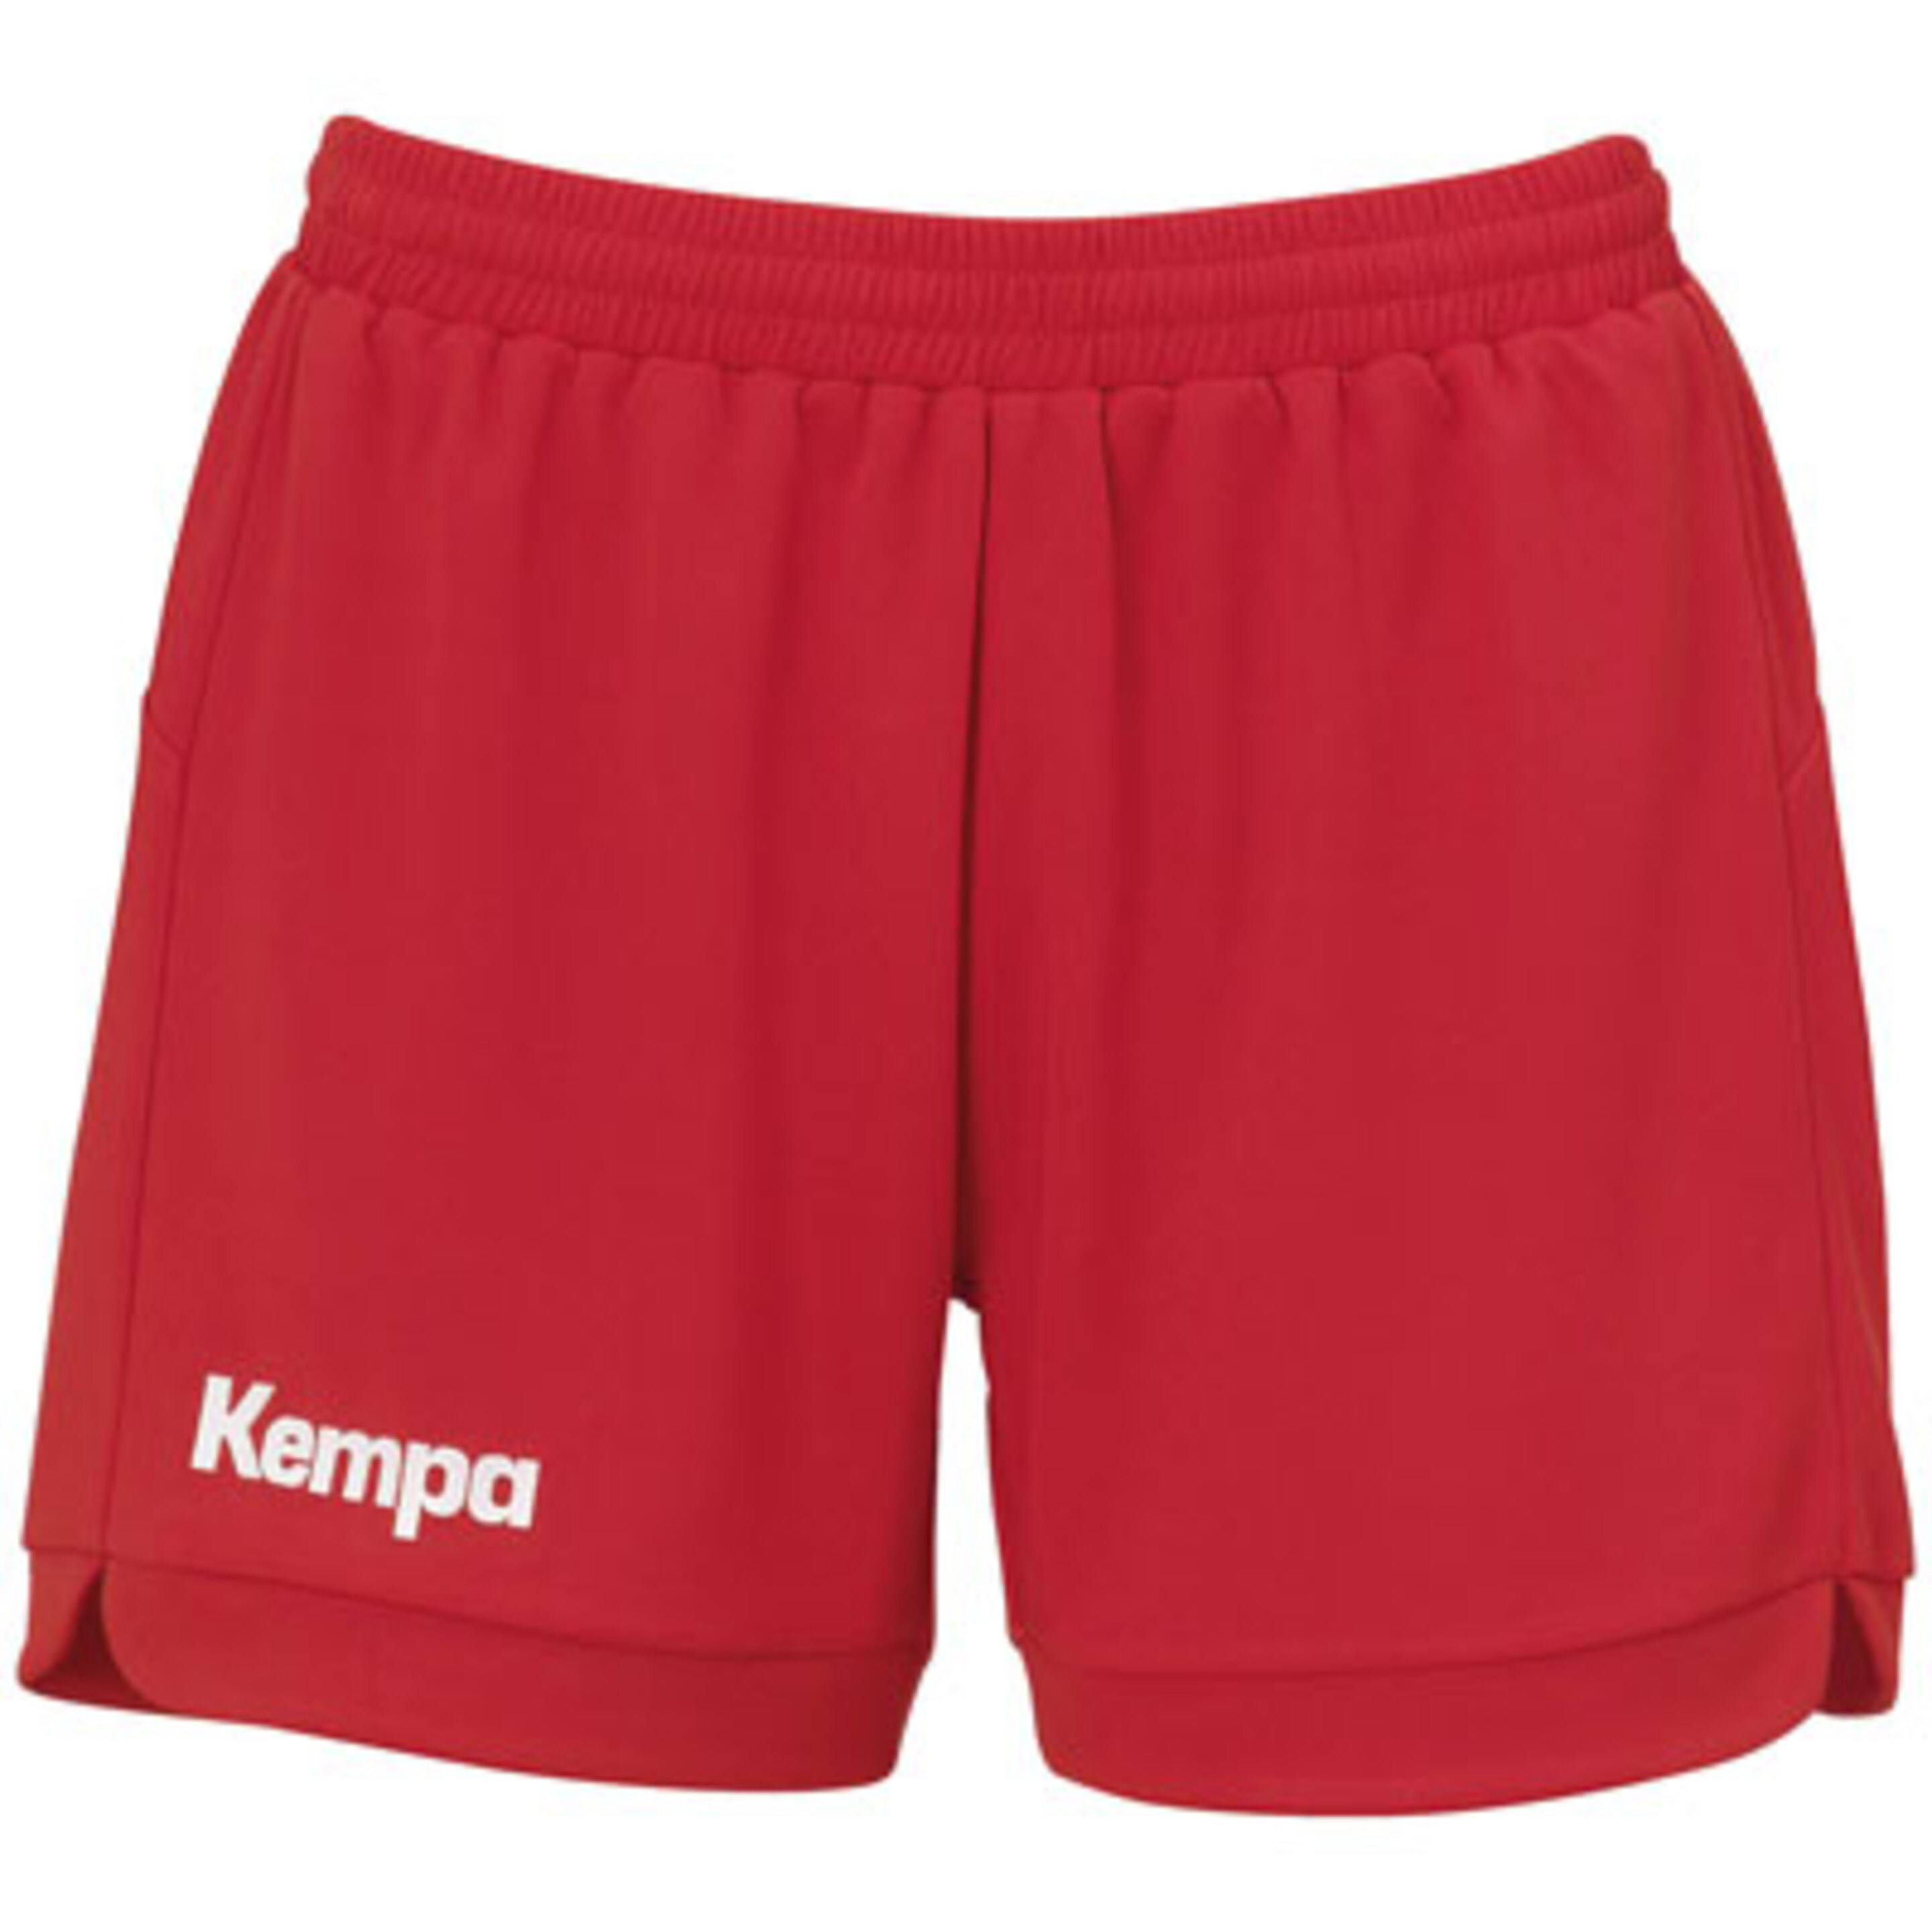 Prime Shorts Women Rojo Kempa - rojo - 